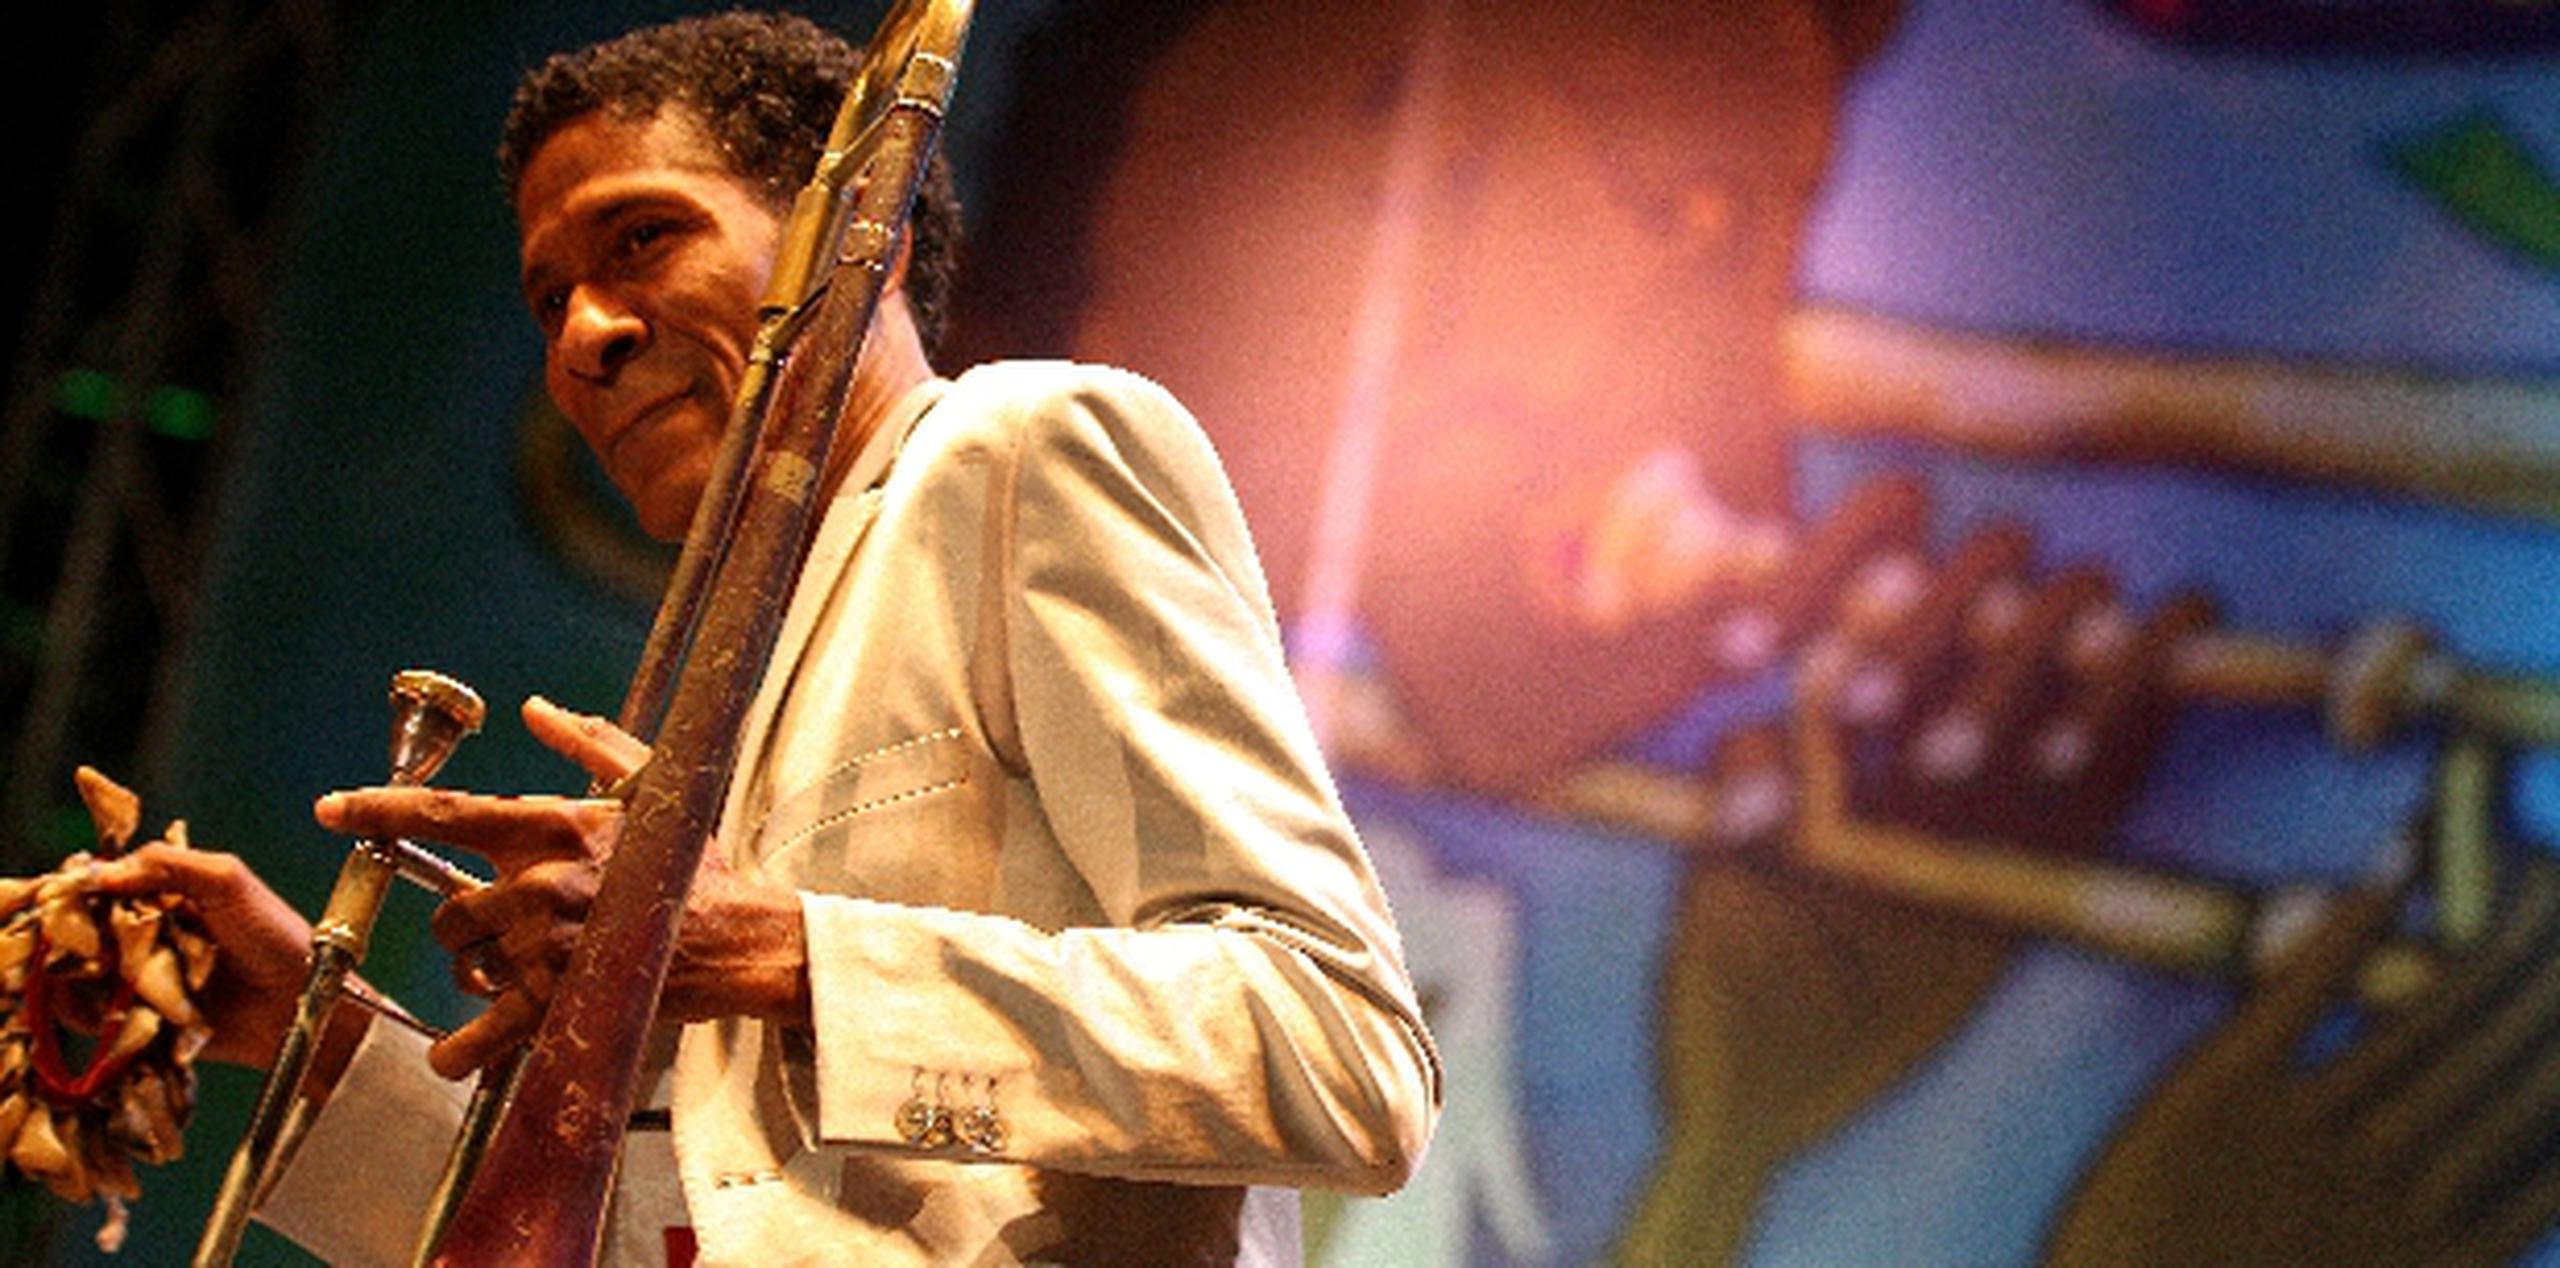 William Cepeda, a quien se le dedicó el Puerto Rico Heineken JazzFest 2013, deleitó al público junto con su orquesta Afro-Rican Jazz. (jose.candelaria@gfrmedia.com)